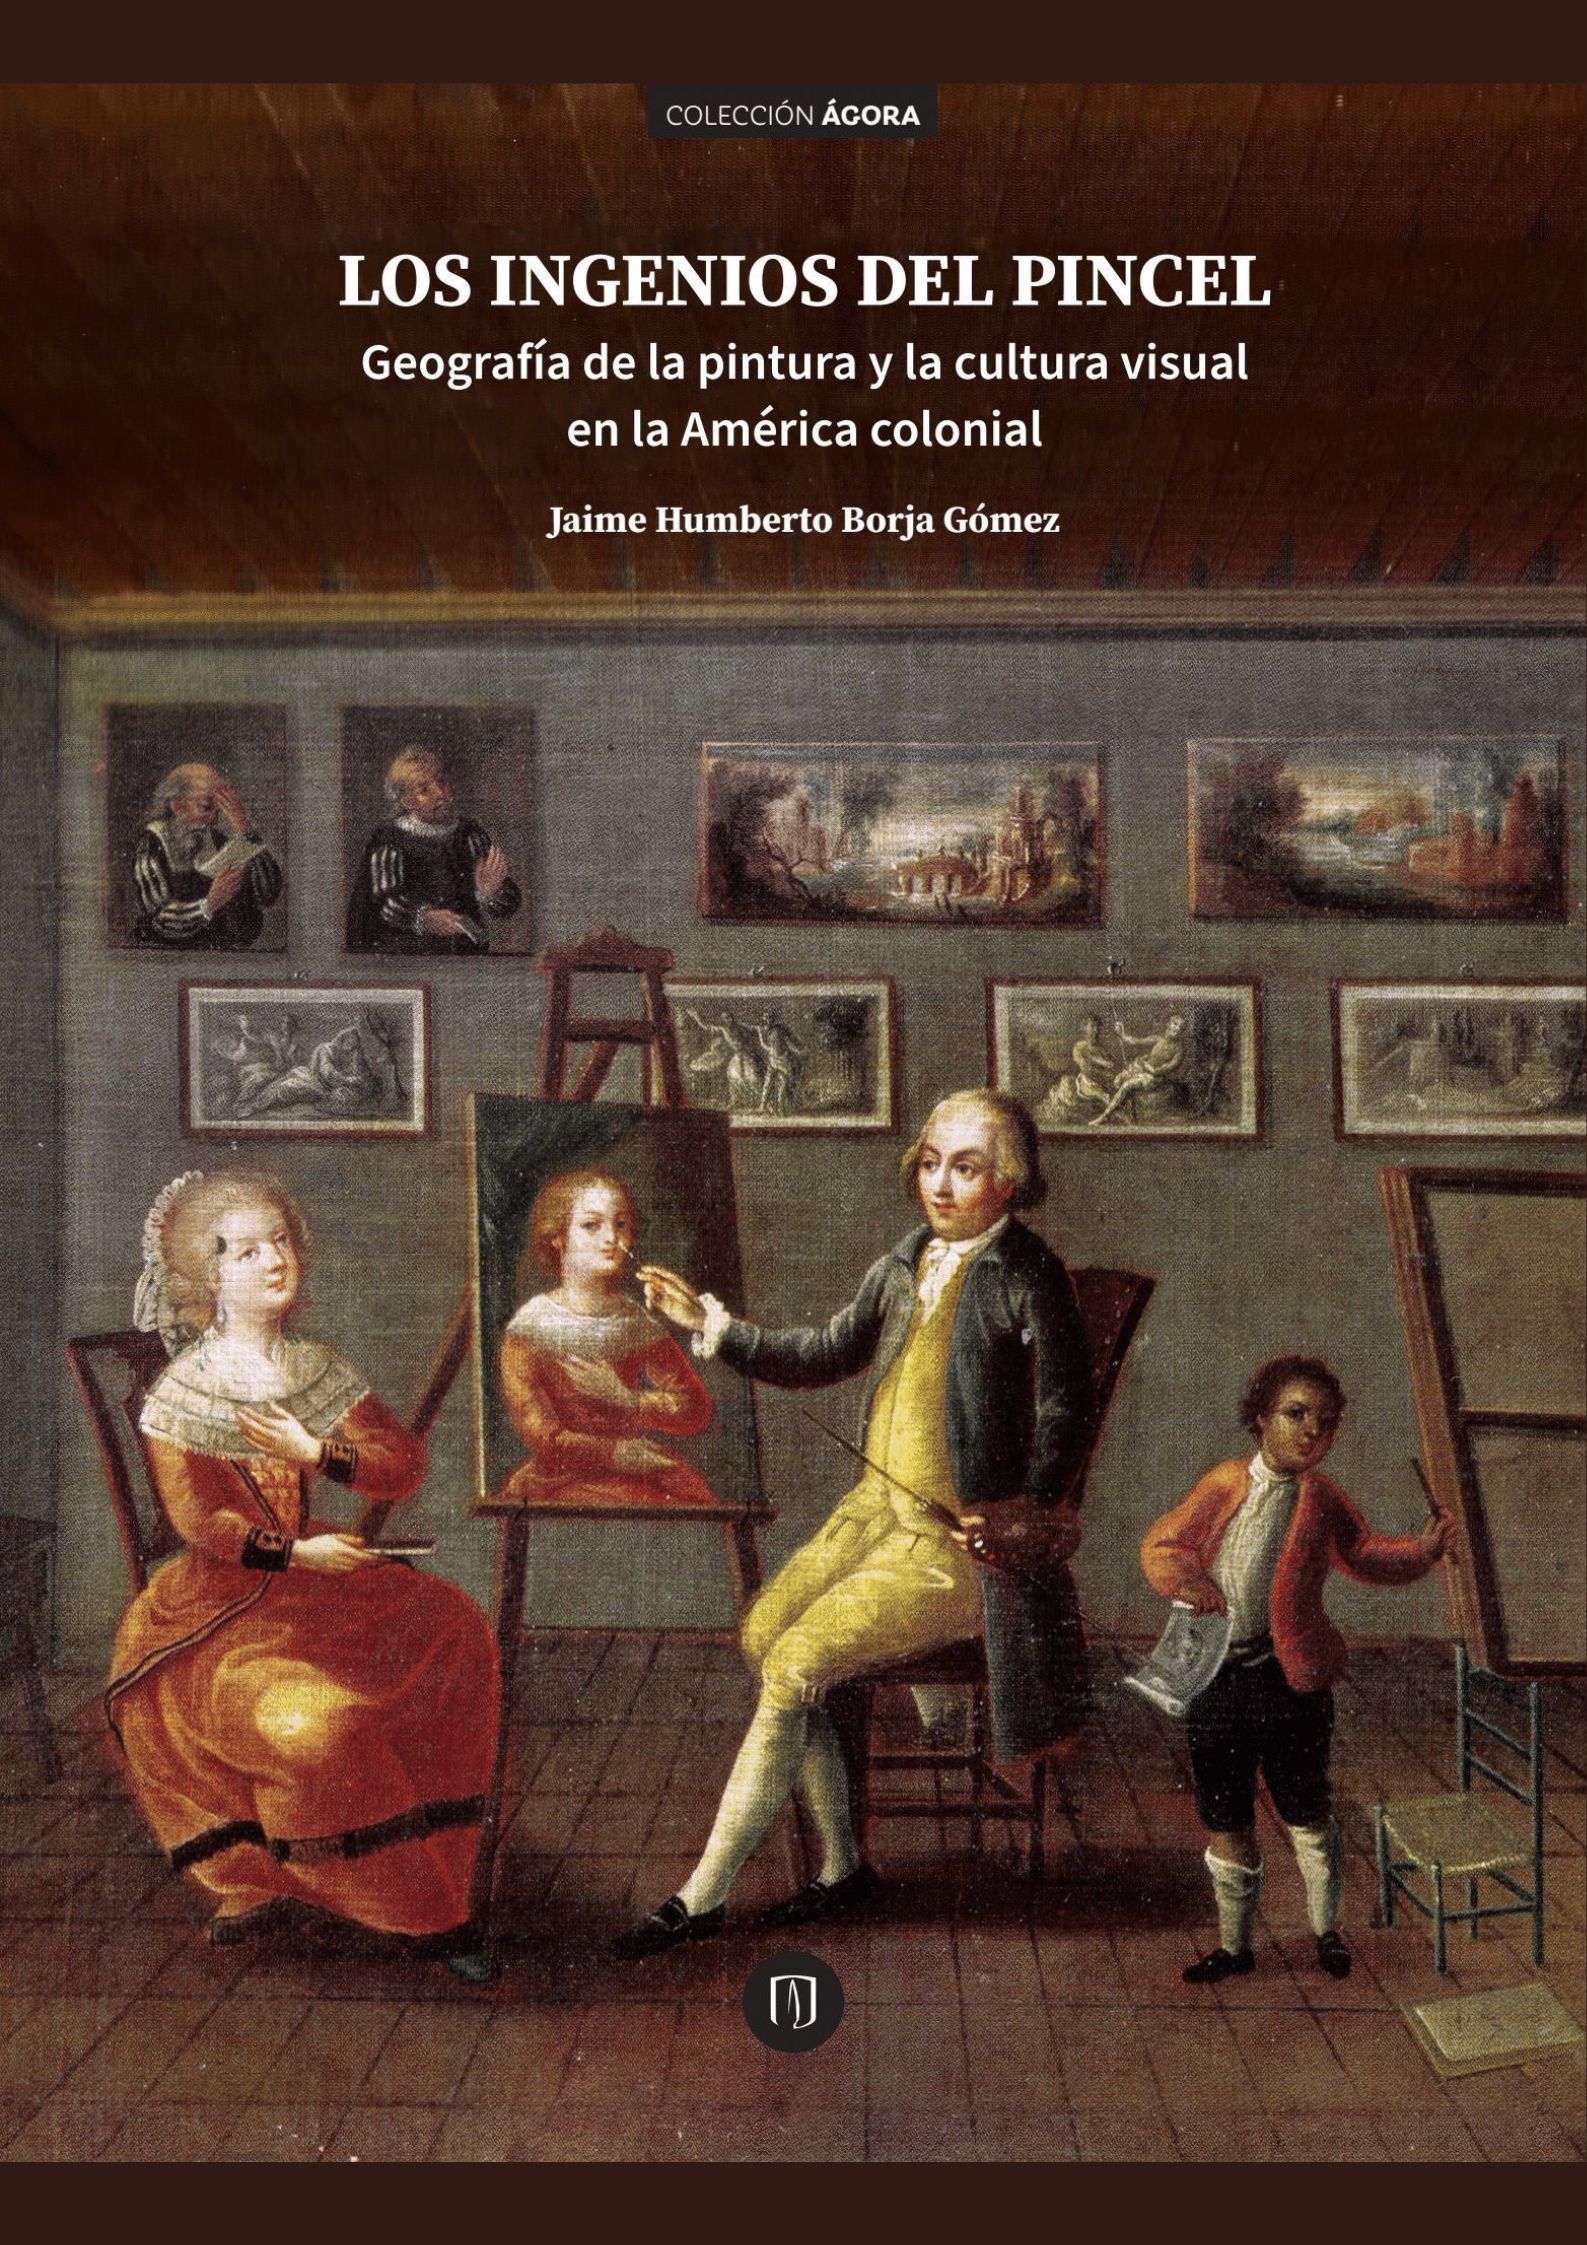 Los ingenios del pincel. Geografía de la pintura y la cultura visual en la América colonial